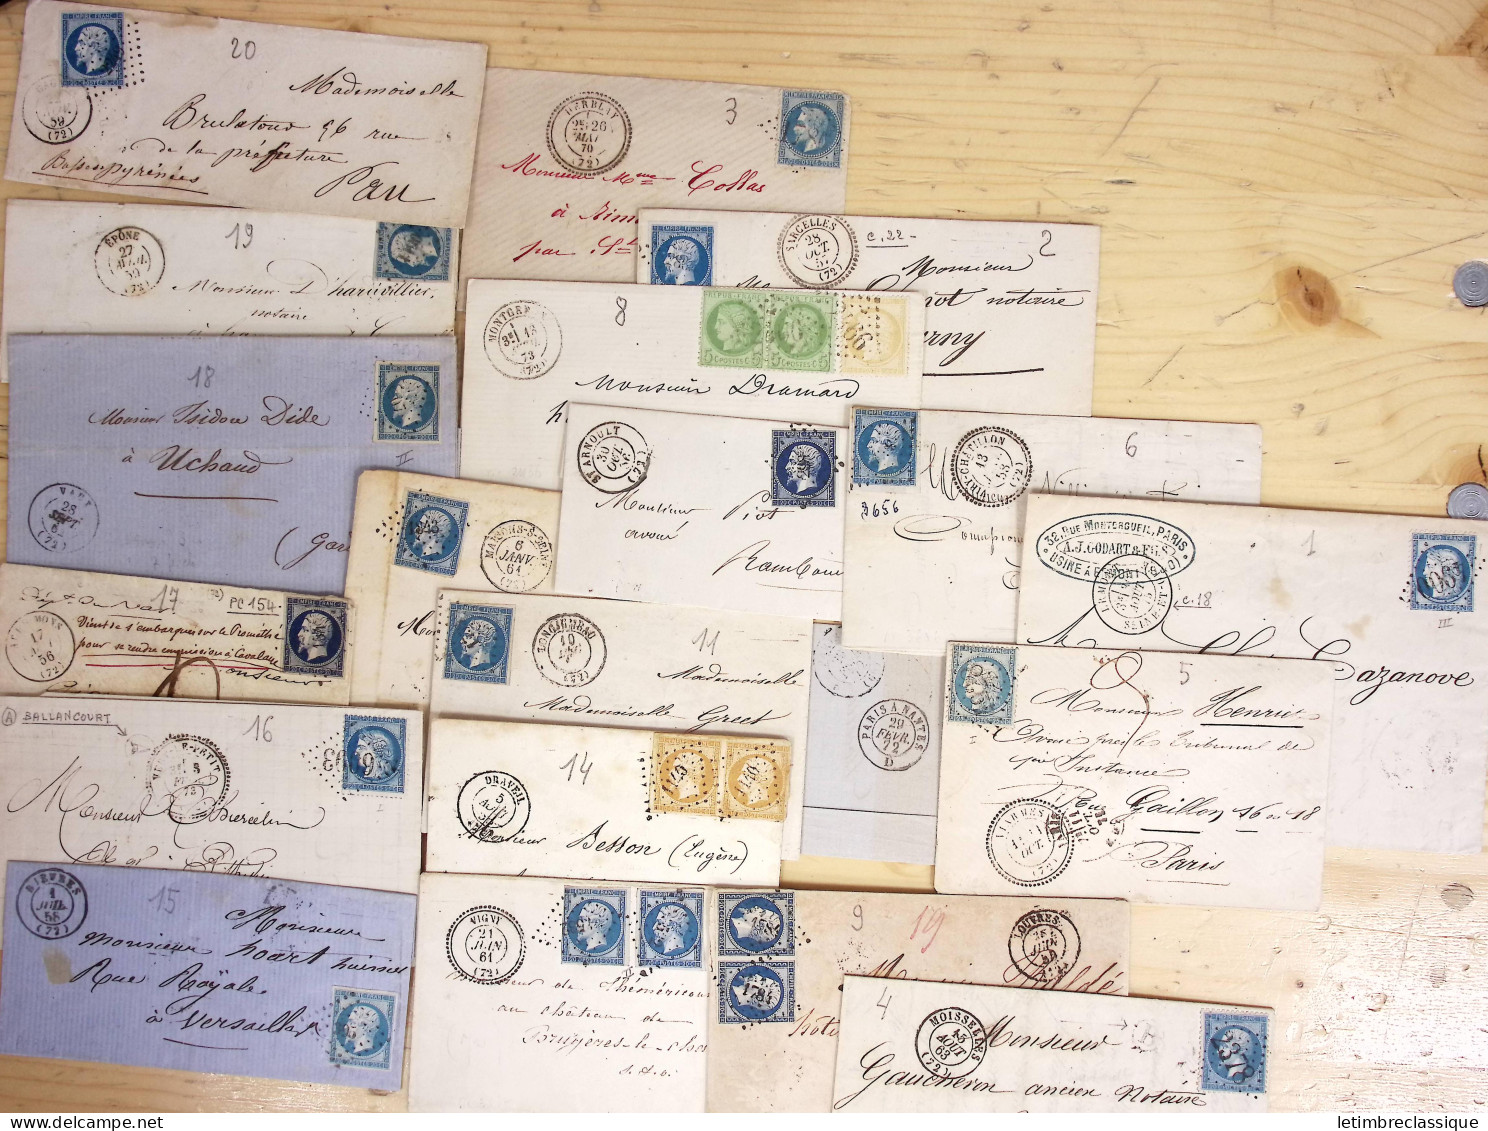 Lettre Ensemble d'env. et sachets de l'Union Marcophile contenant des marques postales et lettres classiques de la Haute